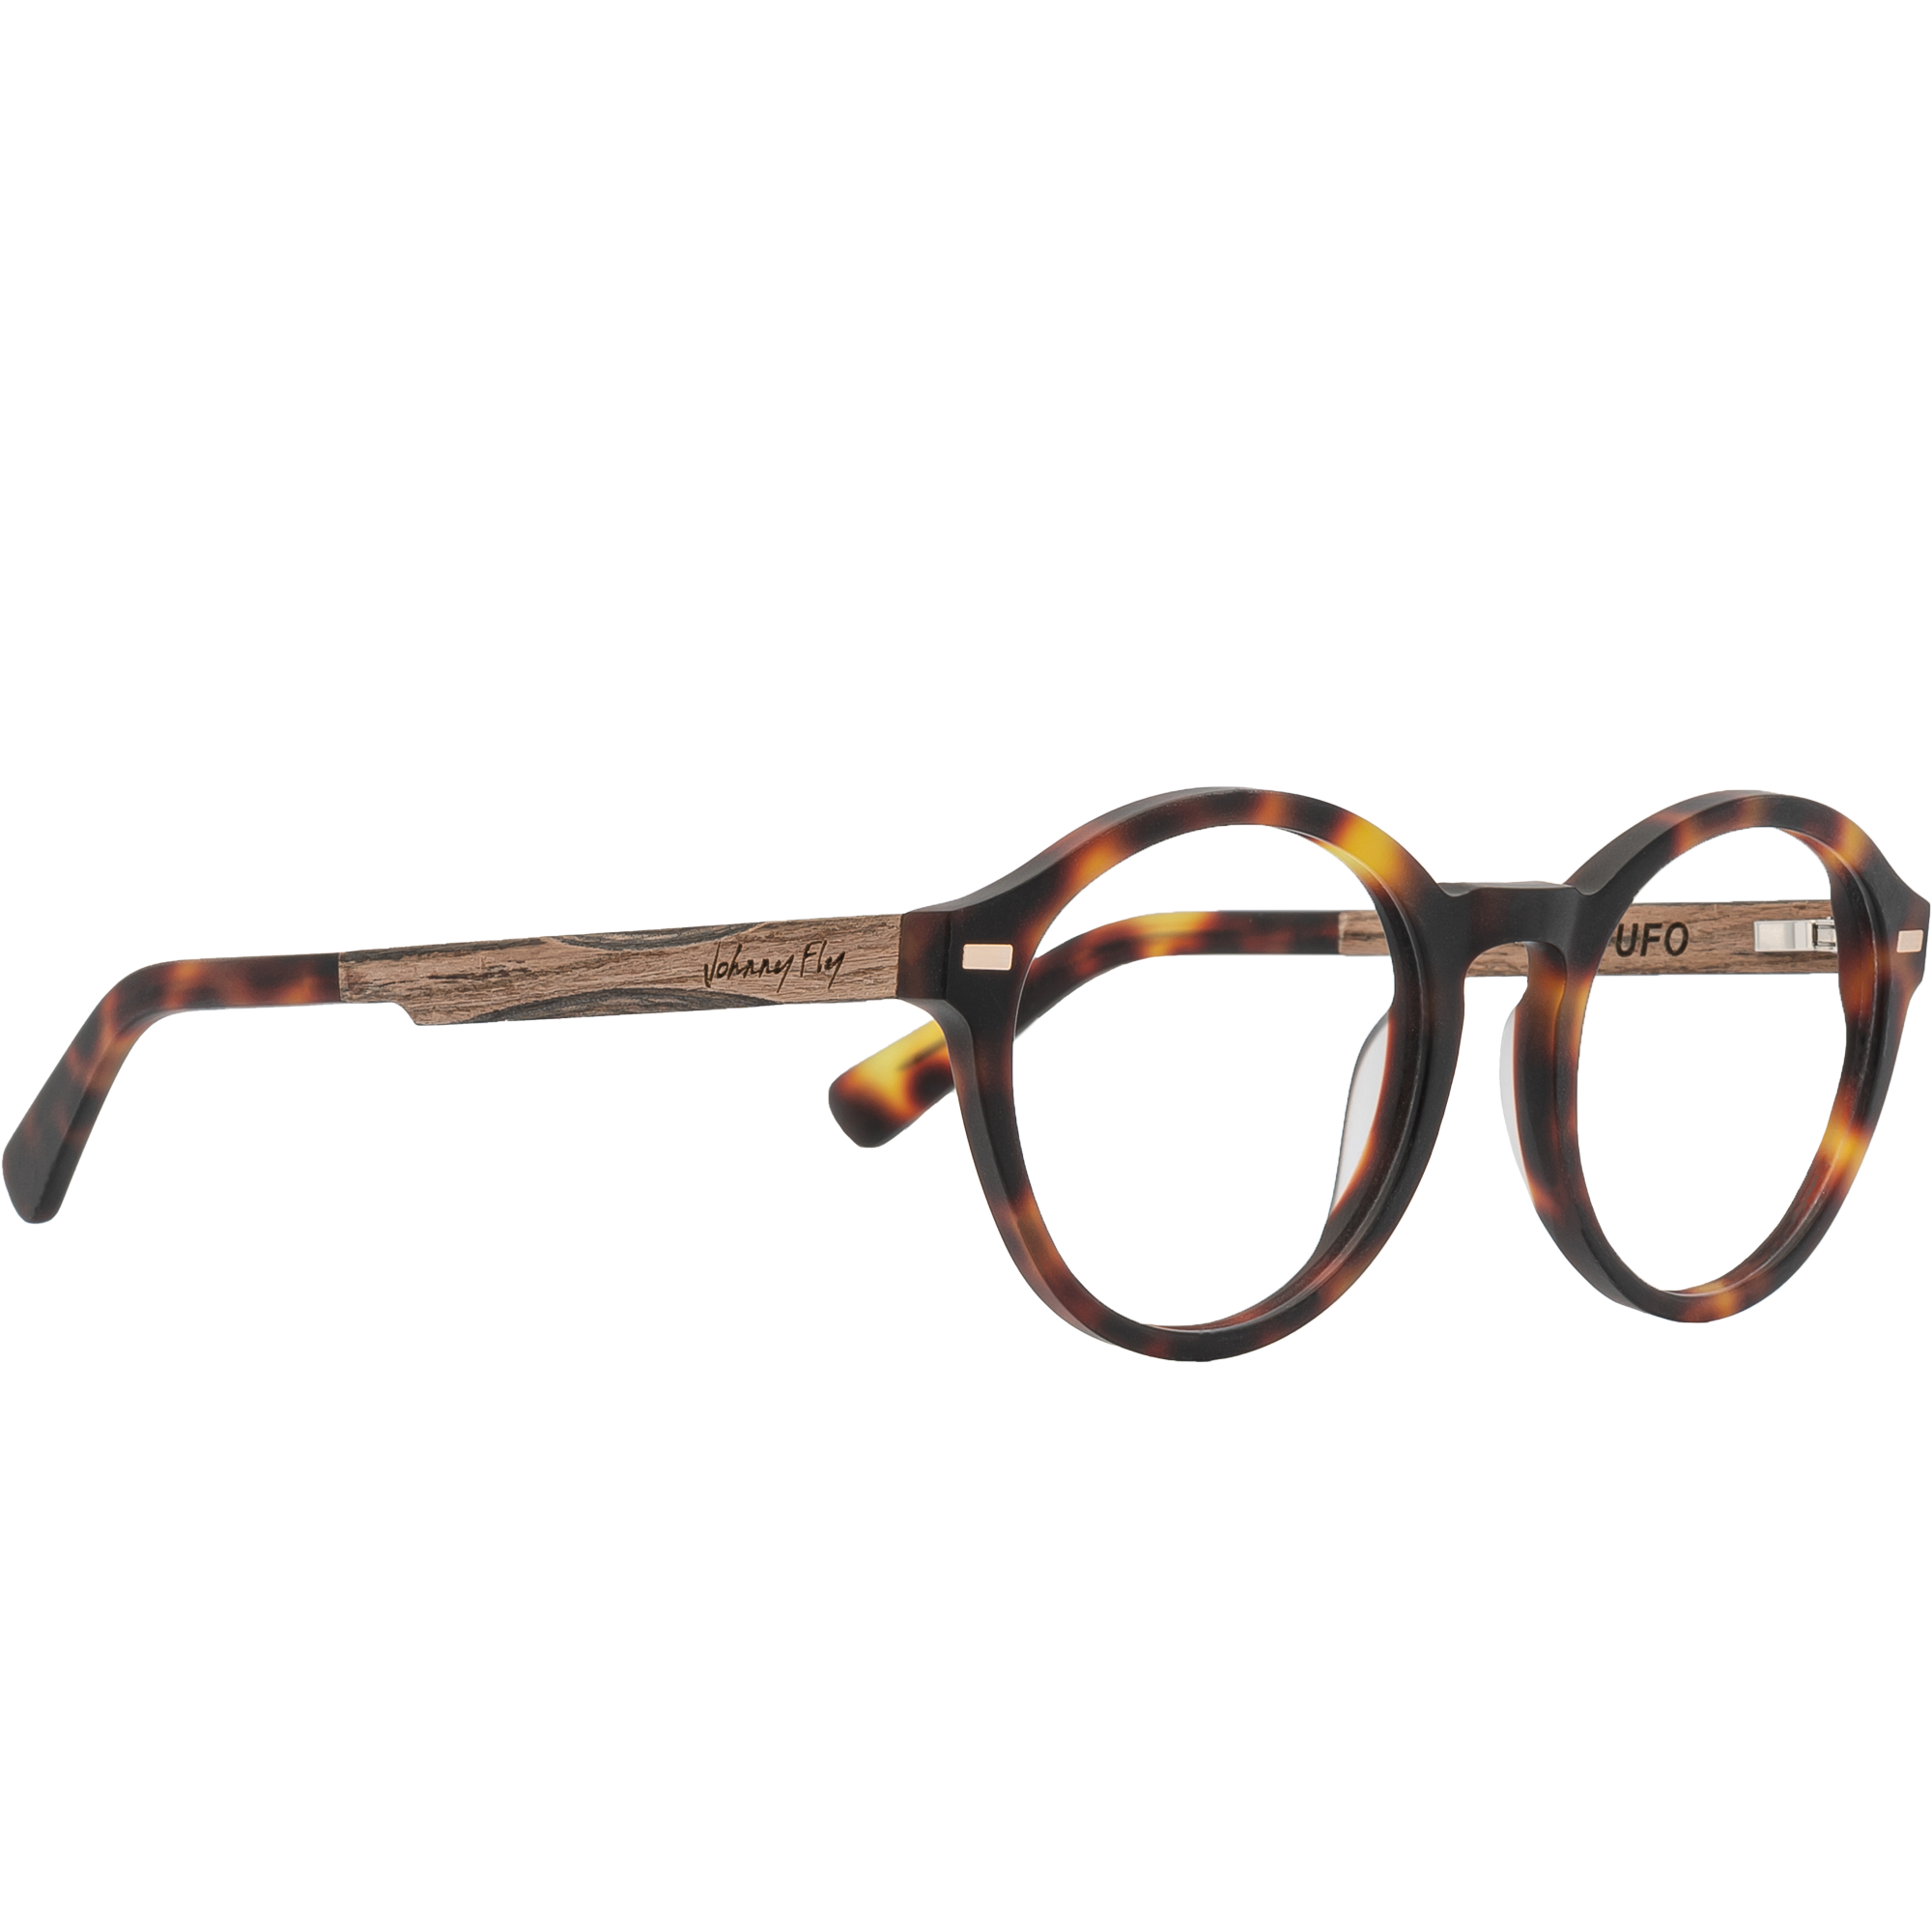 UFO Frame - Classic Tortoise - Eyeglasses Frame - Johnny Fly Eyewear 